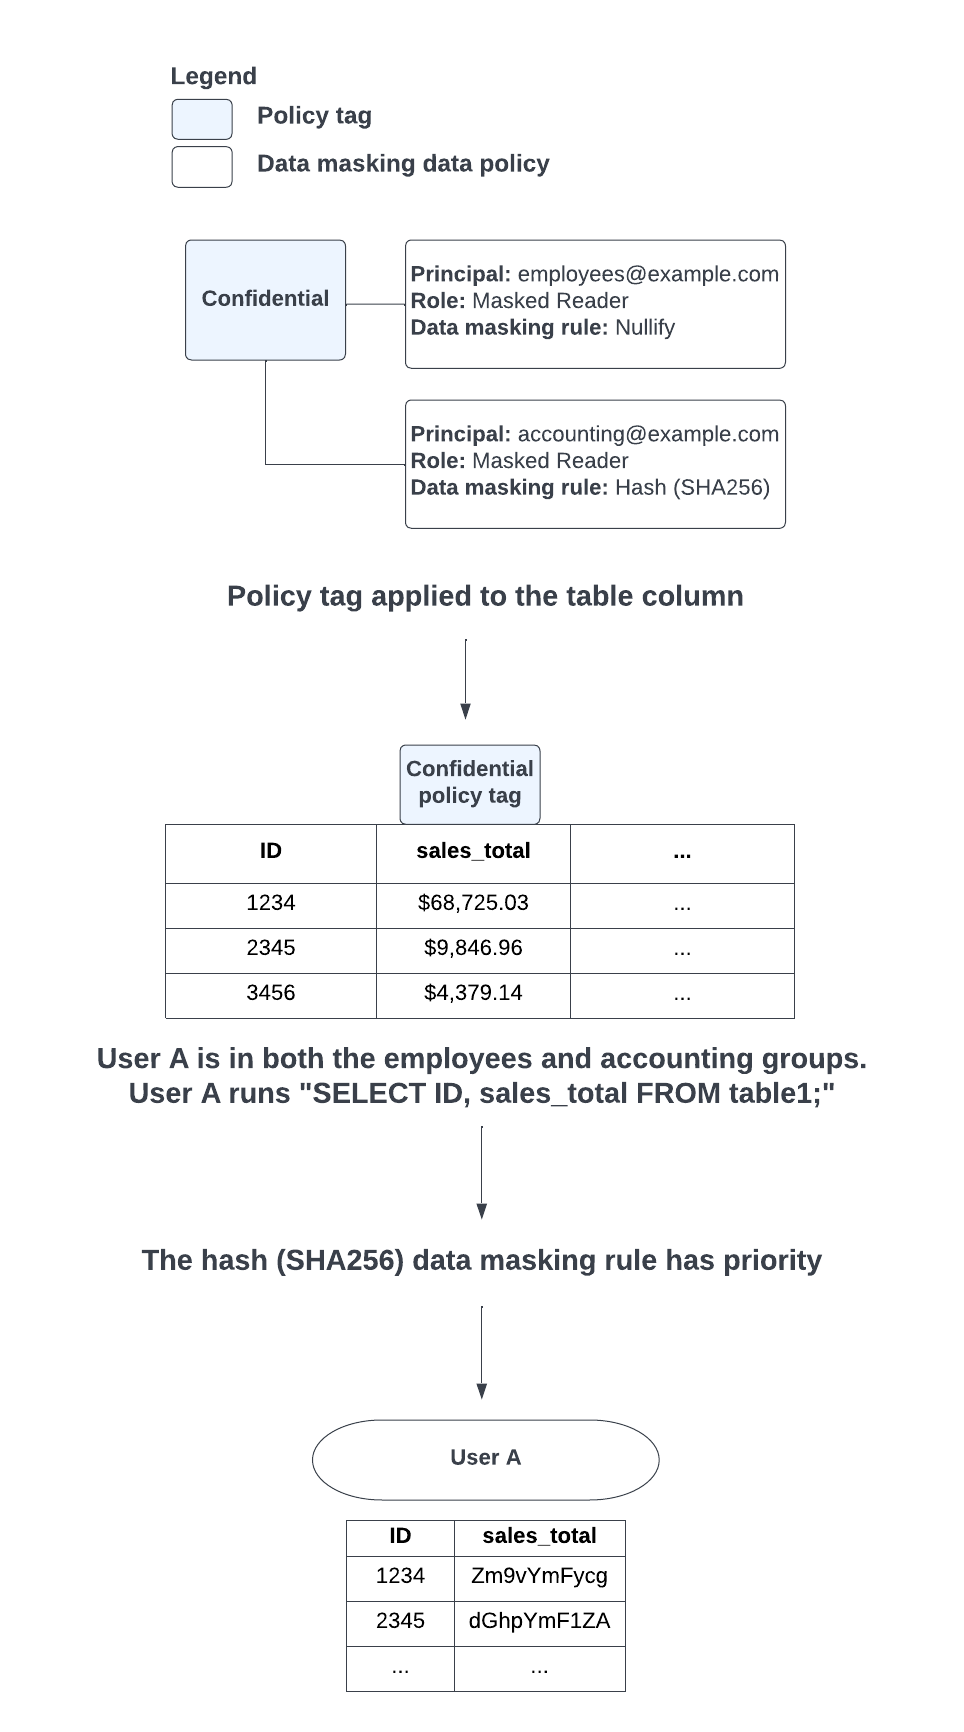 En cas de conflit entre l'application des règles de masquage des données Toujours "Null" et Hachage (SHA-256) en raison des groupes auxquels appartient l'utilisateur, la règle de masquage des données (SHA-256) est prioritaire.